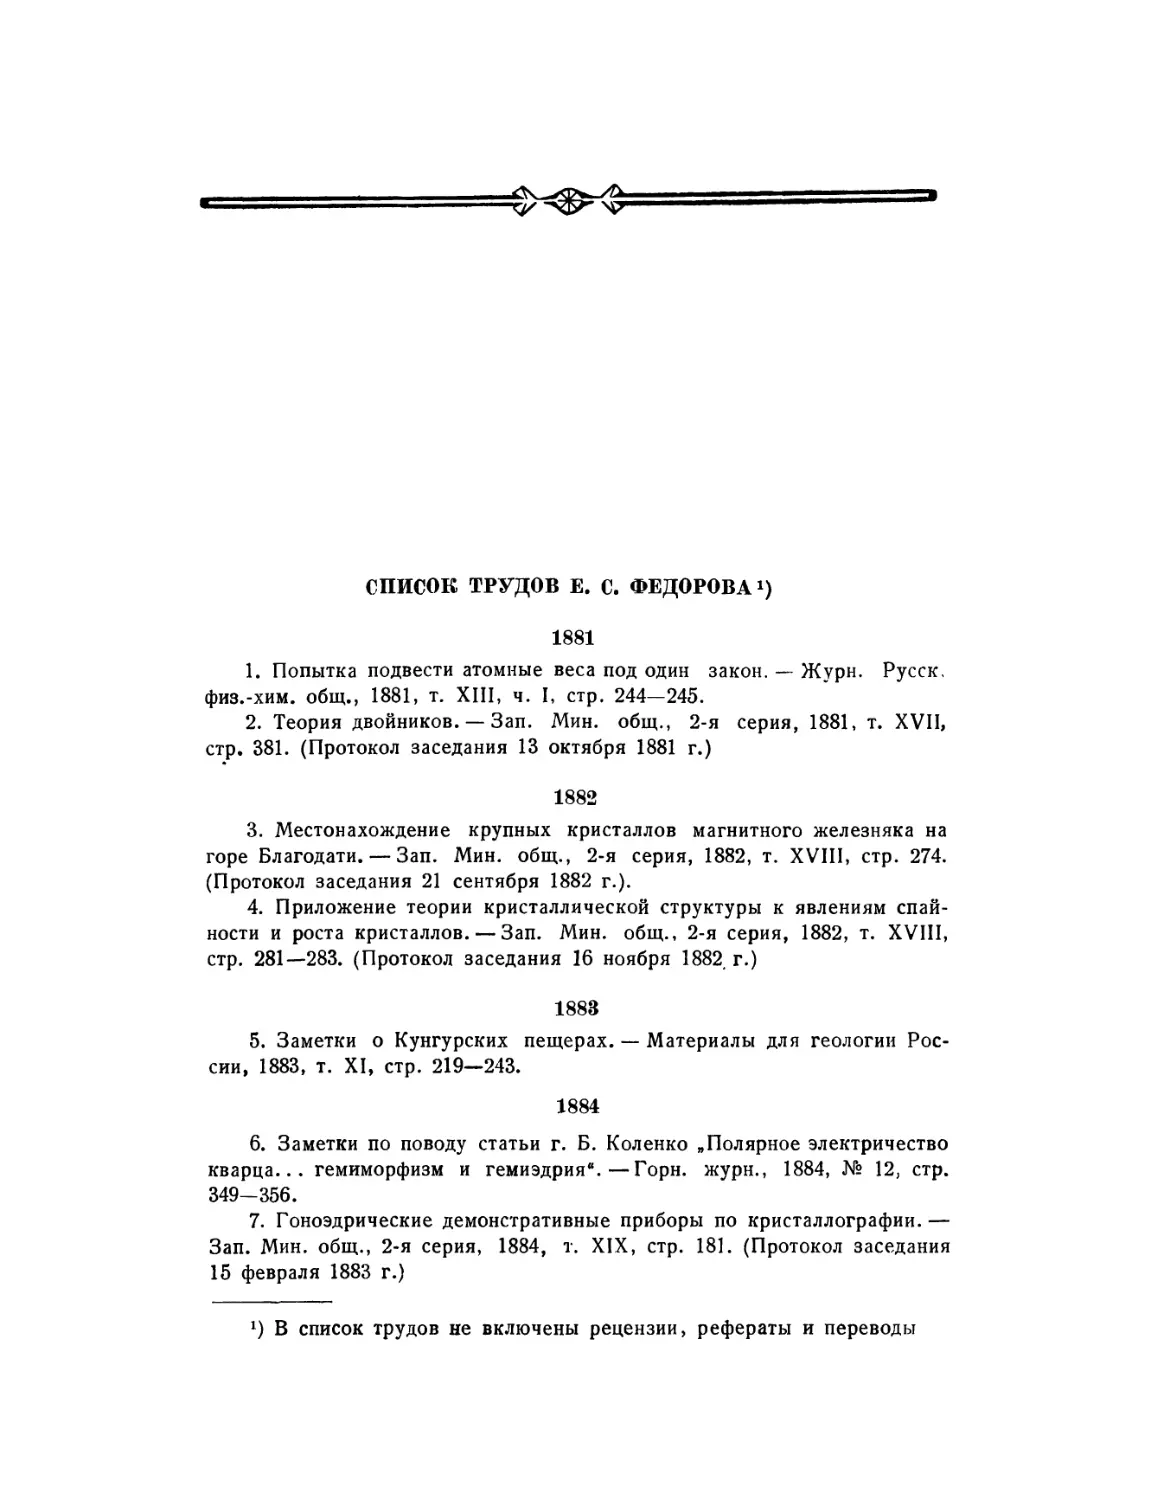 Список трудов Е.С. Федорова